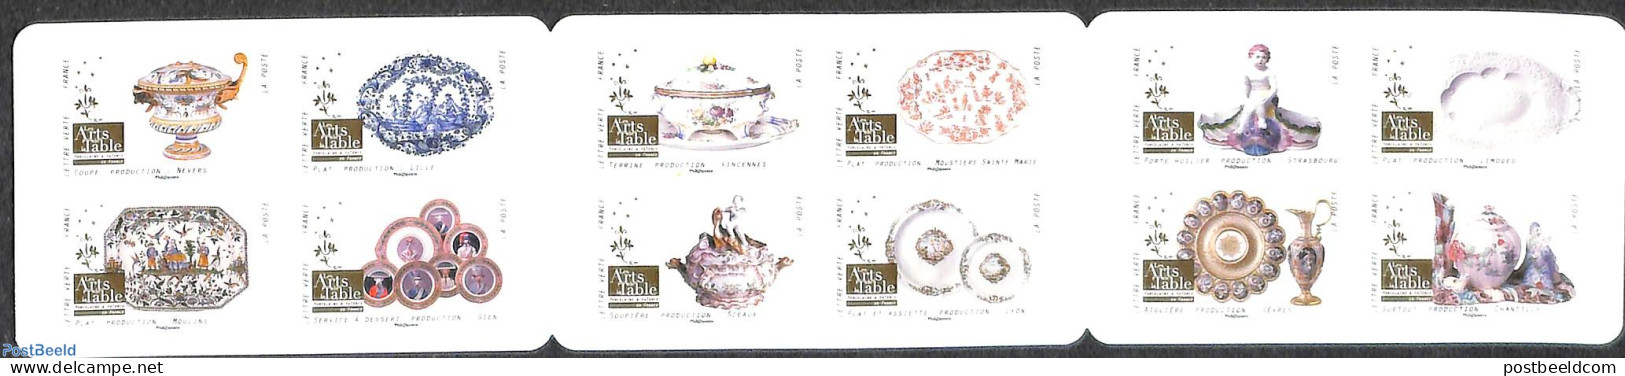 France 2018 Porcelain 12v S-a In Foil Booklet, Mint NH, Stamp Booklets - Art - Art & Antique Objects - Ceramics - Nuevos